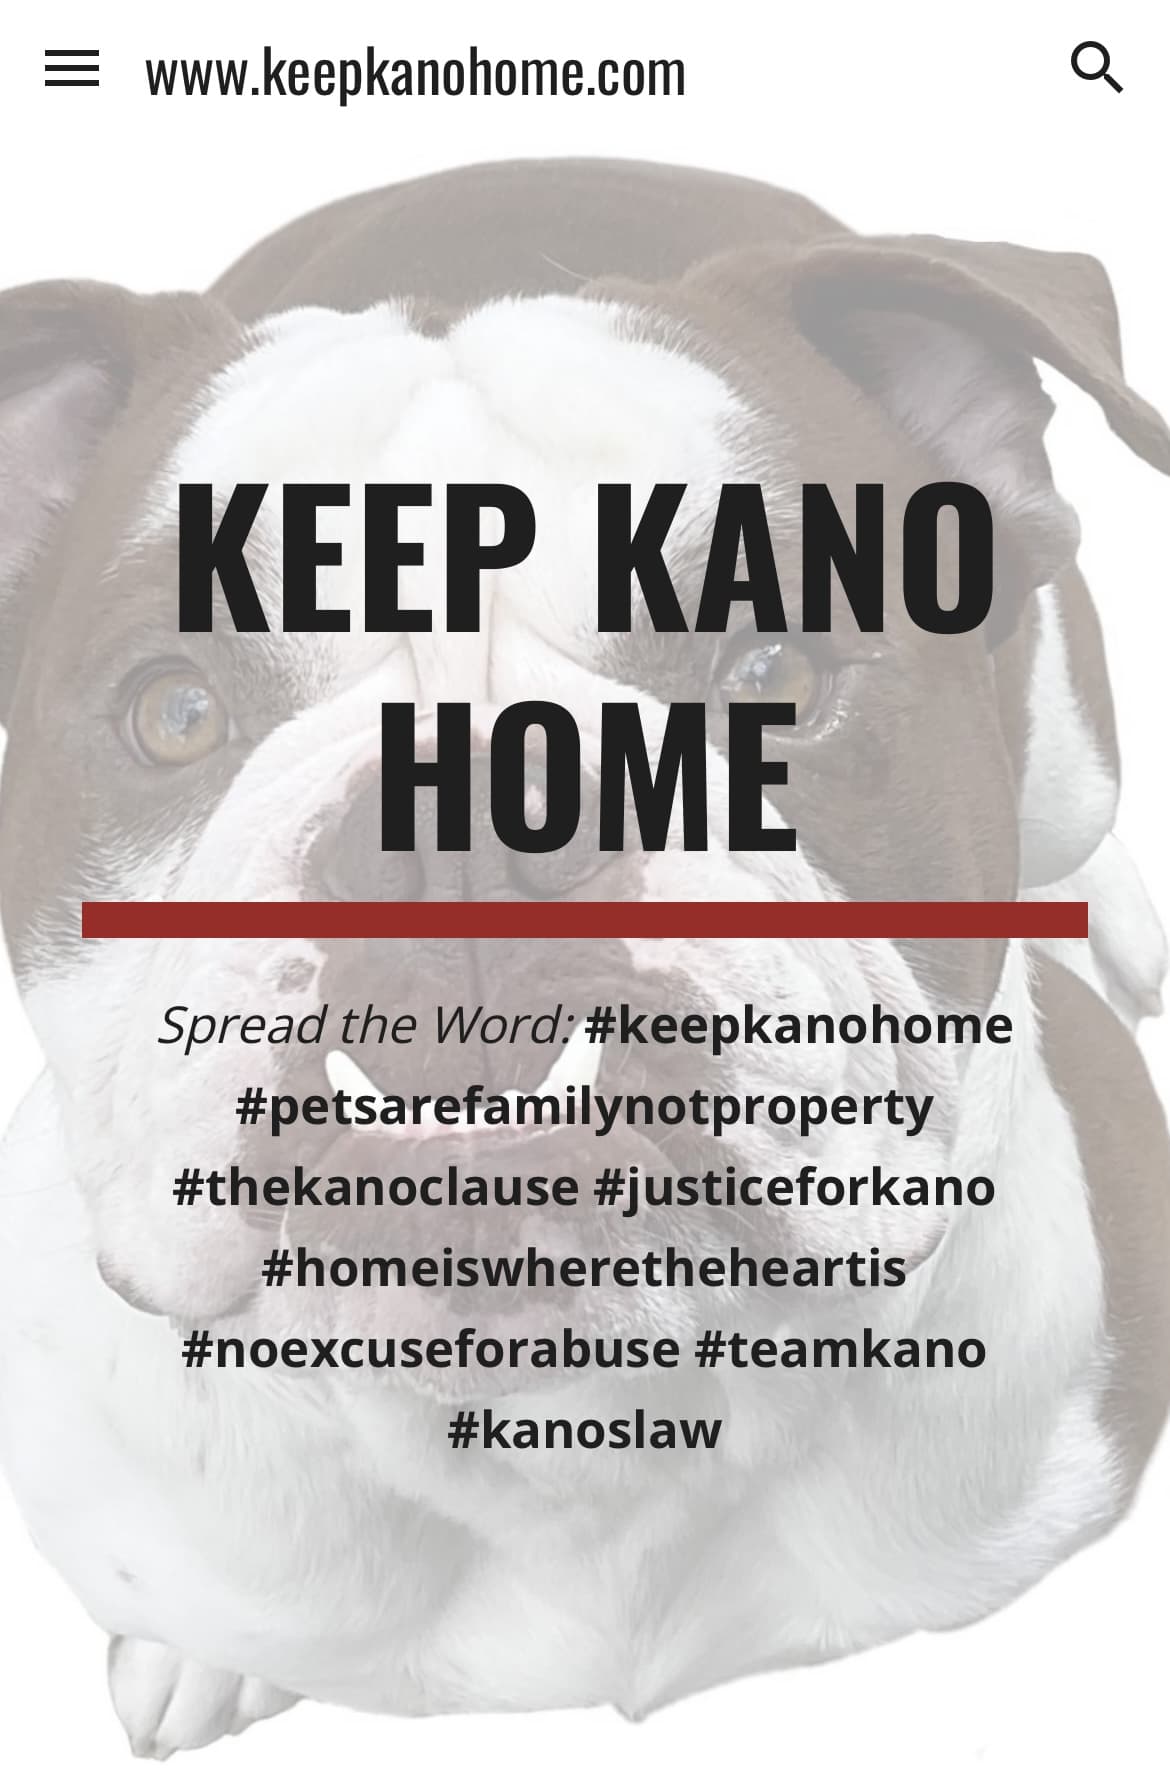 Keep Kano Home!